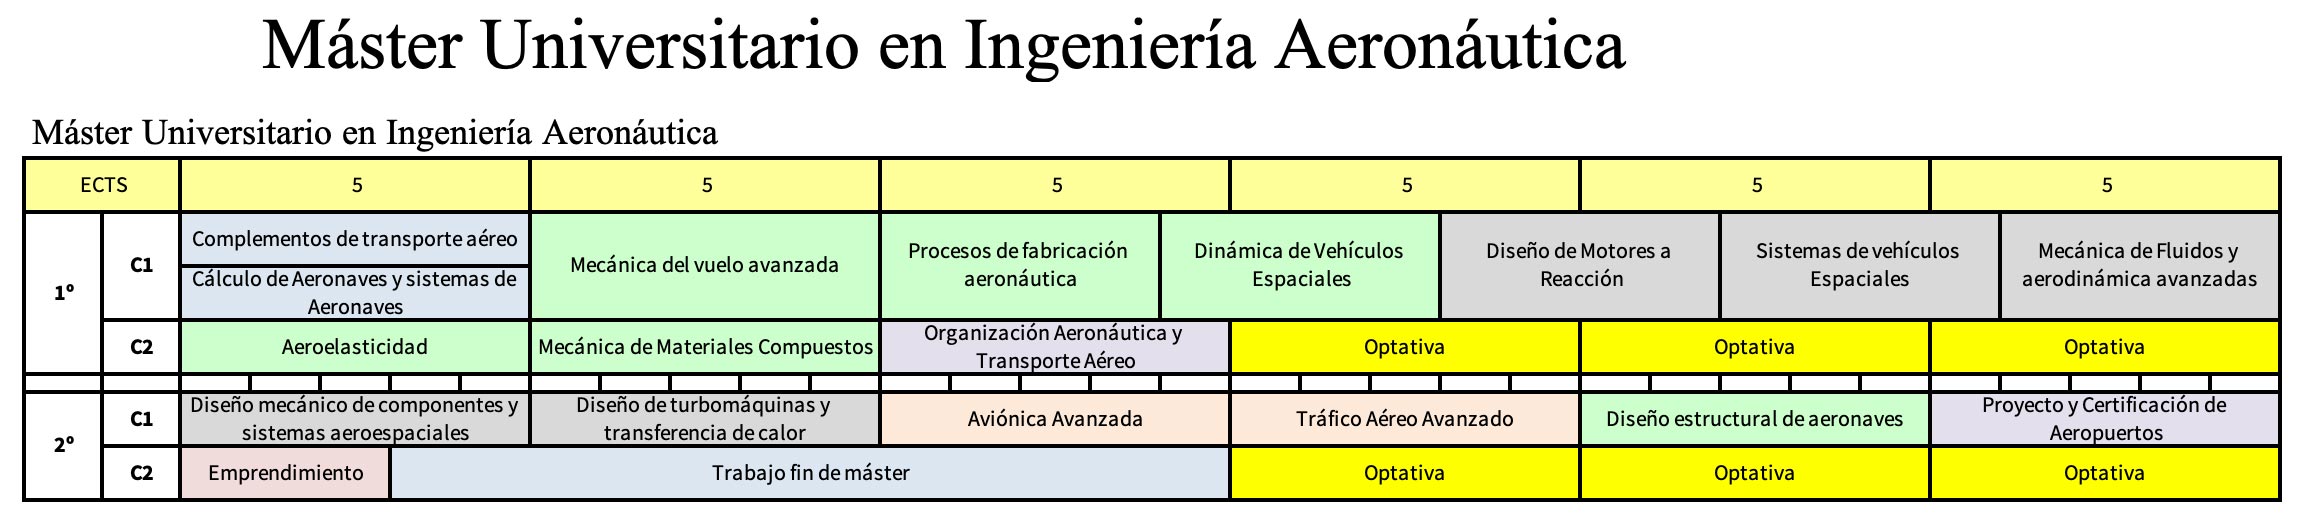 Master Universitario en Ingeniería Aeronáutica 01 | Etsi